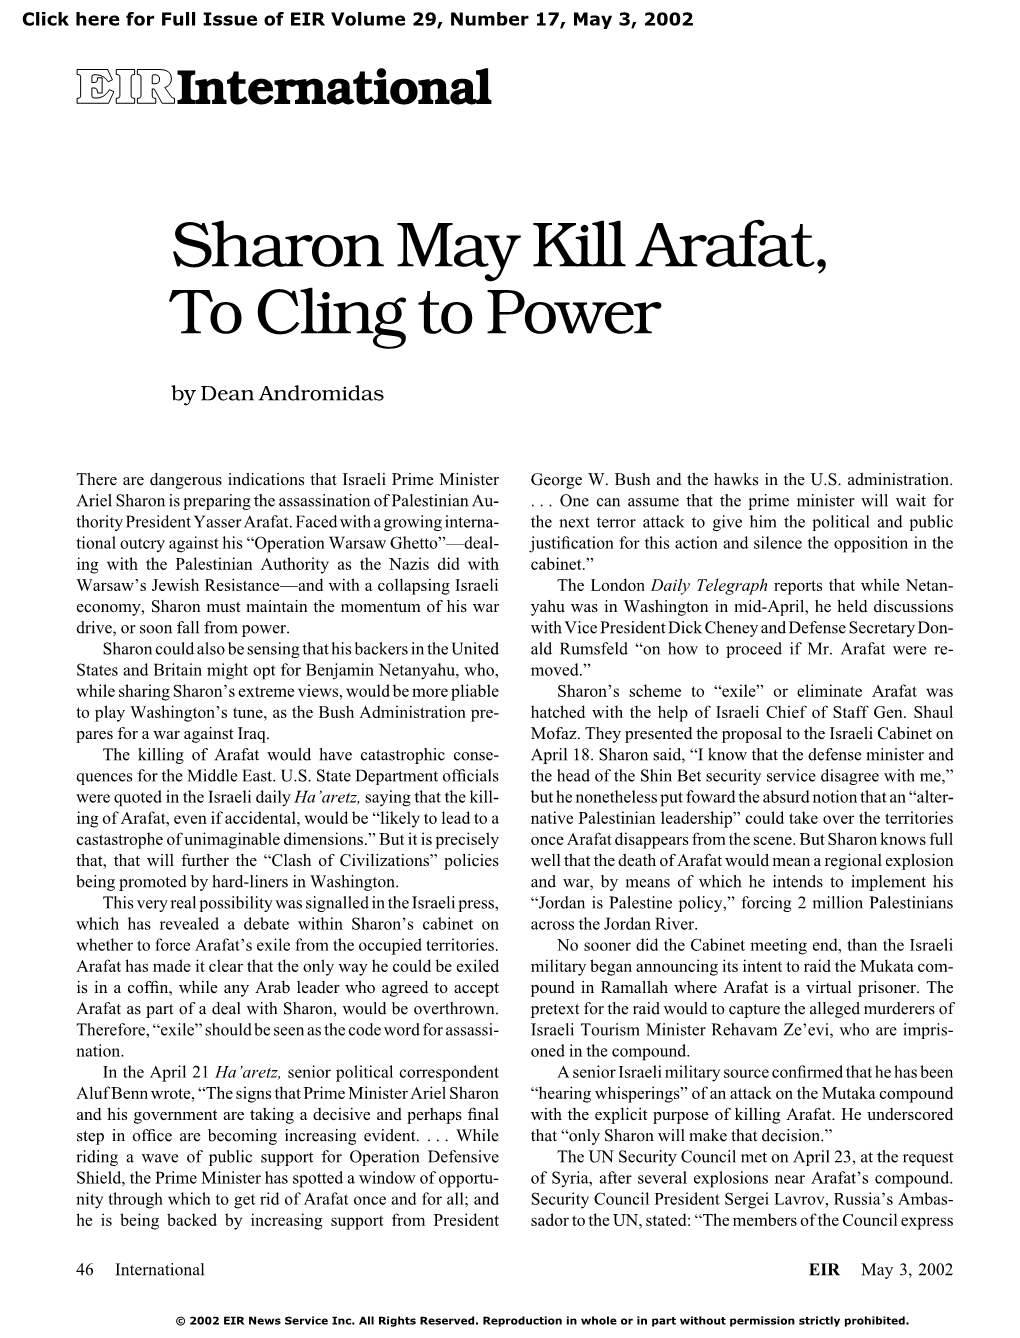 Sharon May Kill Arafat, to Cling to Power